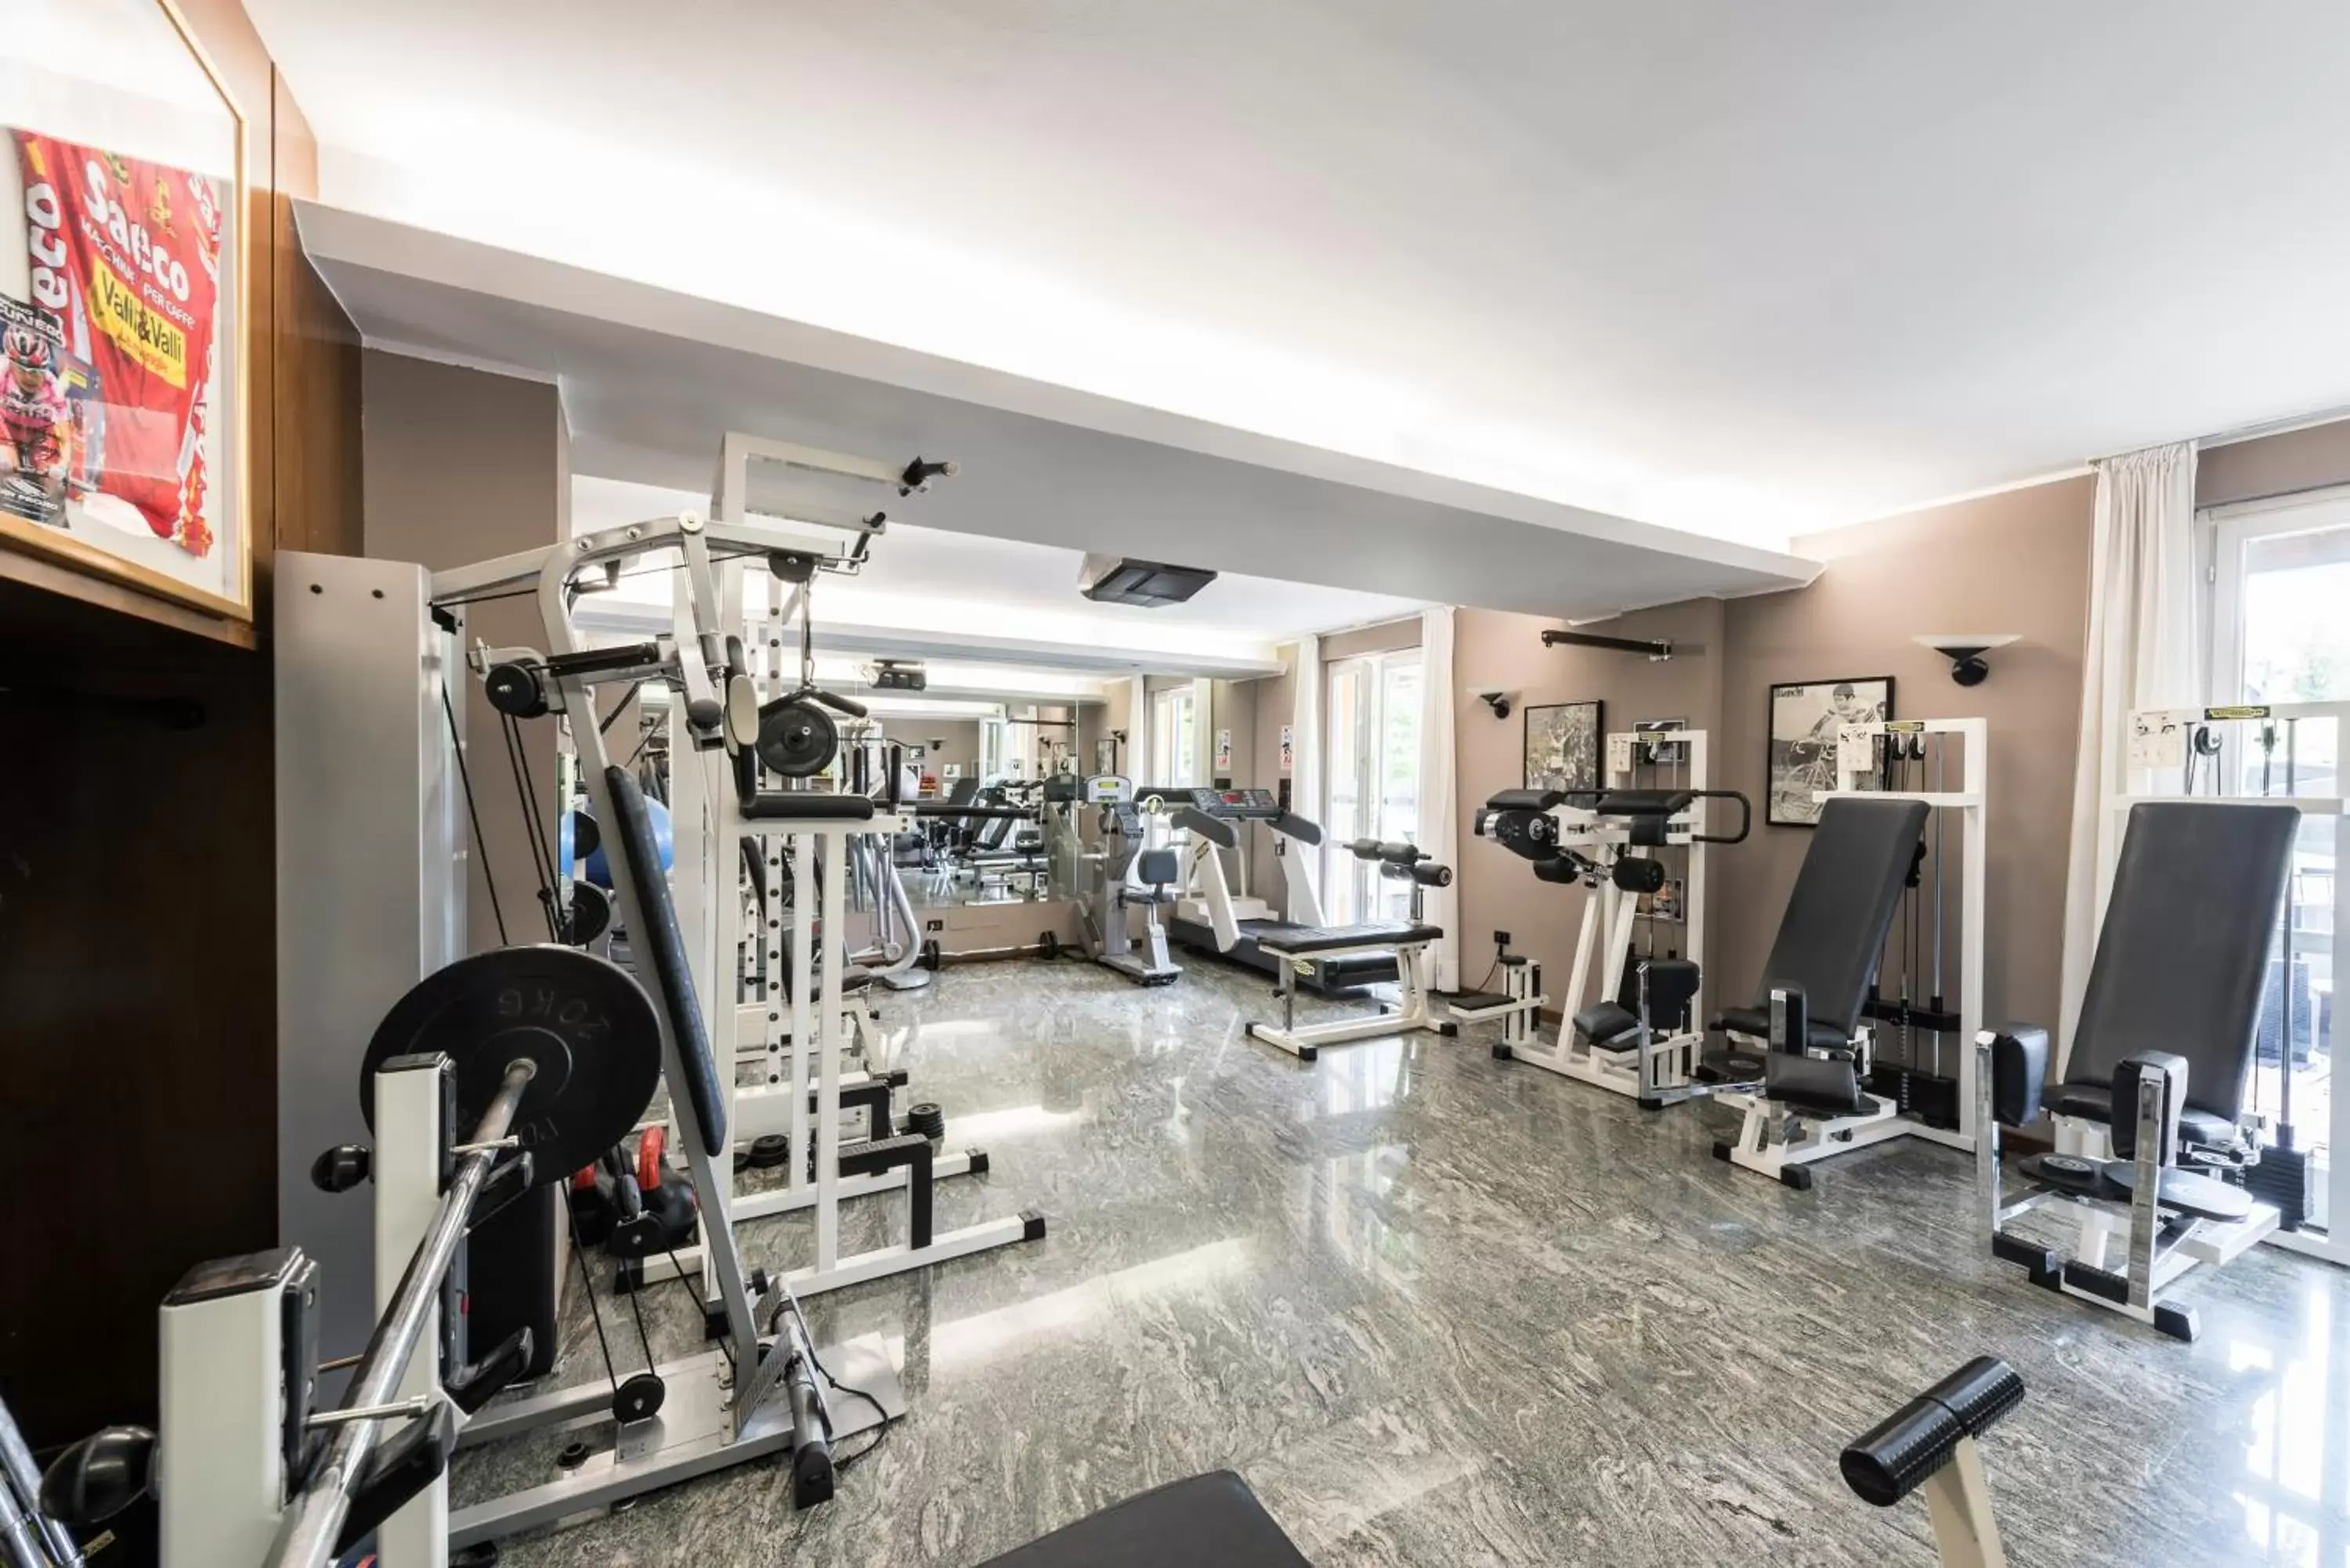 Fitness centre/facilities, Fitness Center/Facilities in La Casa del Mulino